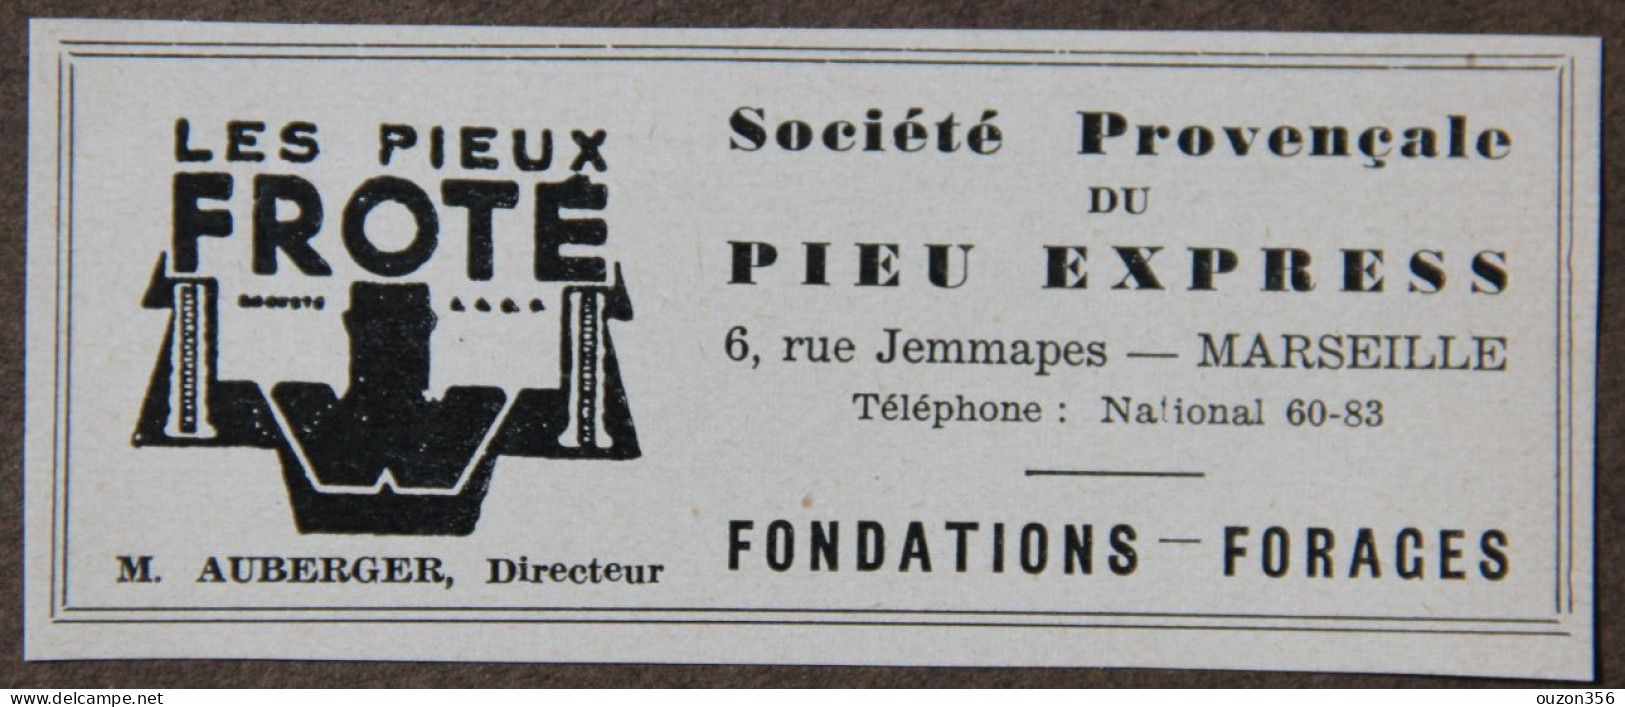 Publicité, Sté Provençale Du Pieu Express, Les Pieux Froté, Fondations, Forages, Marseille, 1951 - Publicités